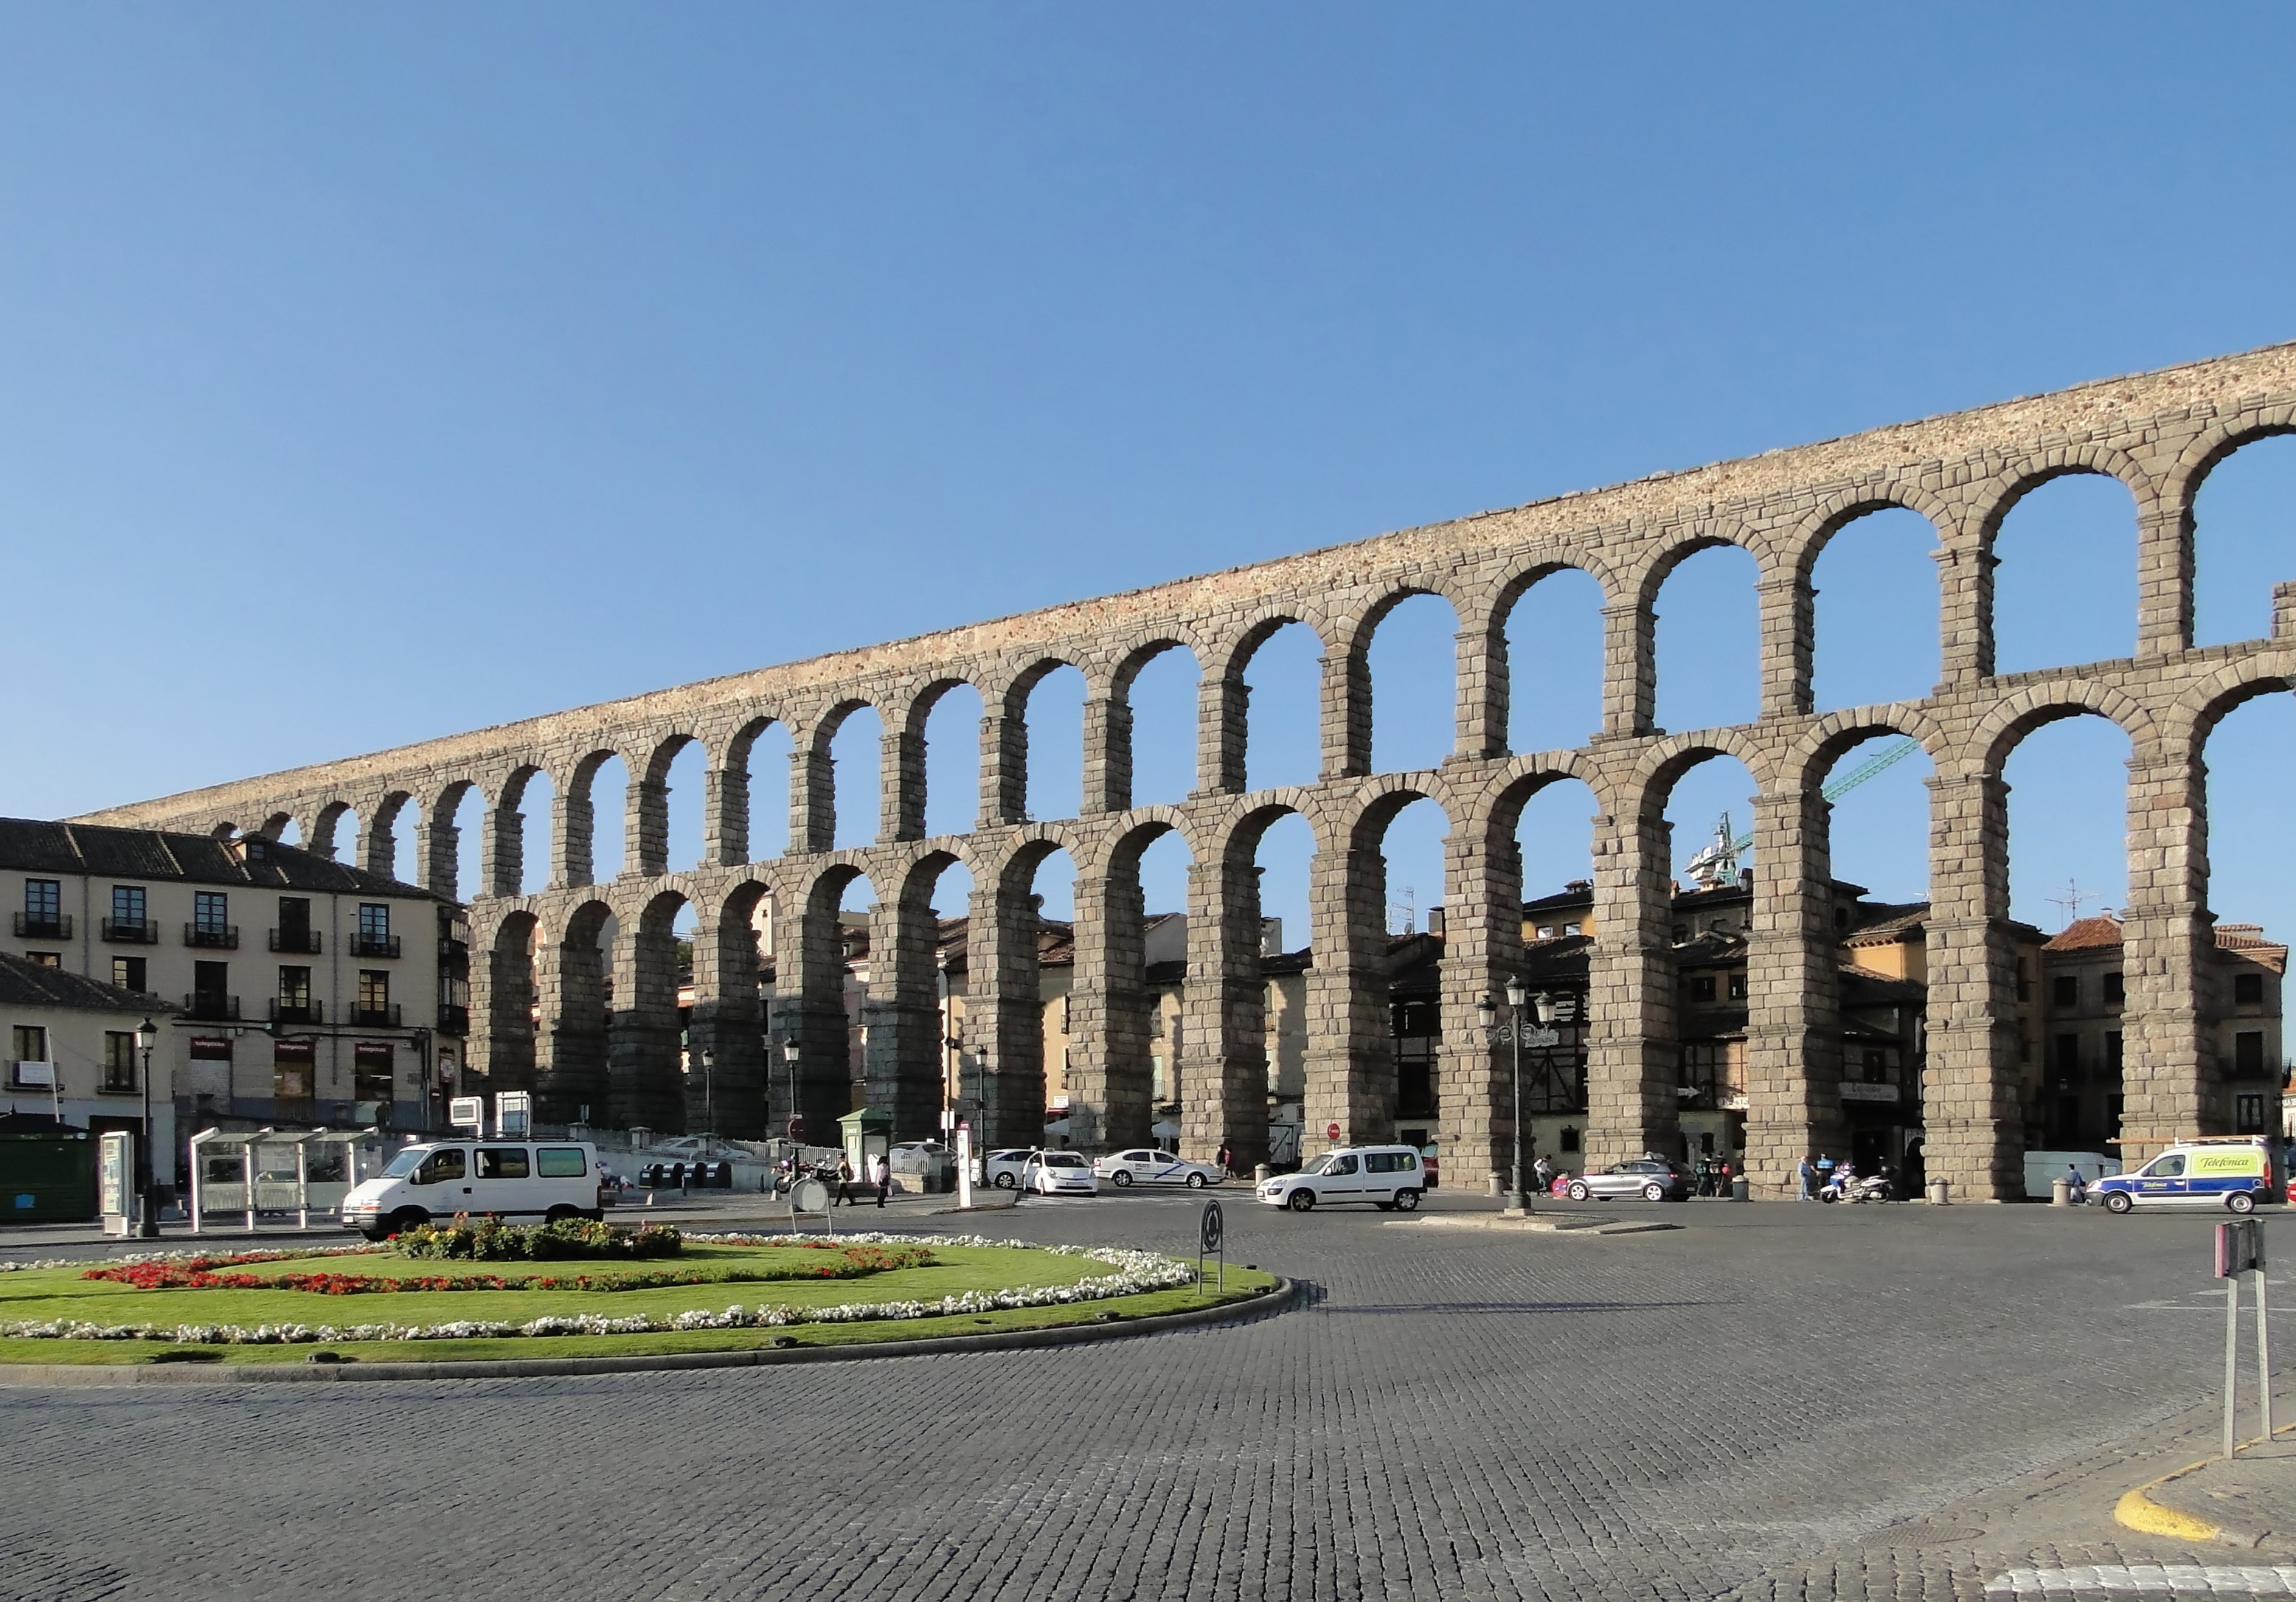 11 Magnificent Roman Aqueducts